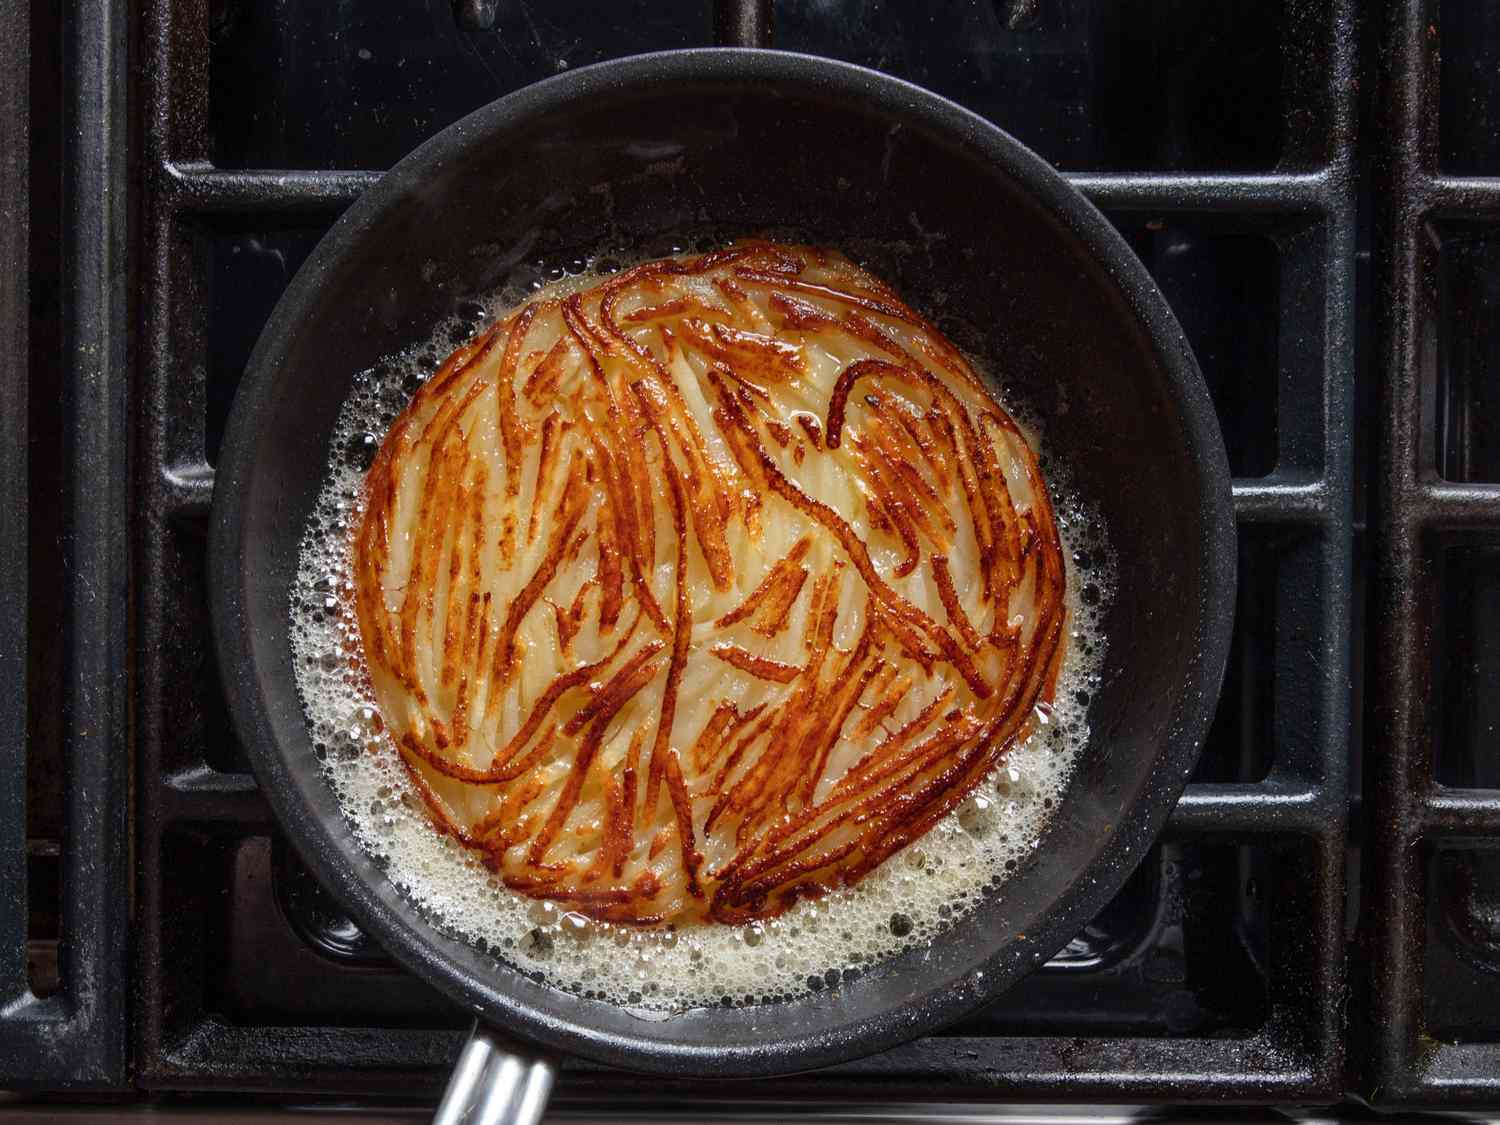 在煎锅里煎一锅，热黄油在两边起泡。烤得焦黄酥脆。